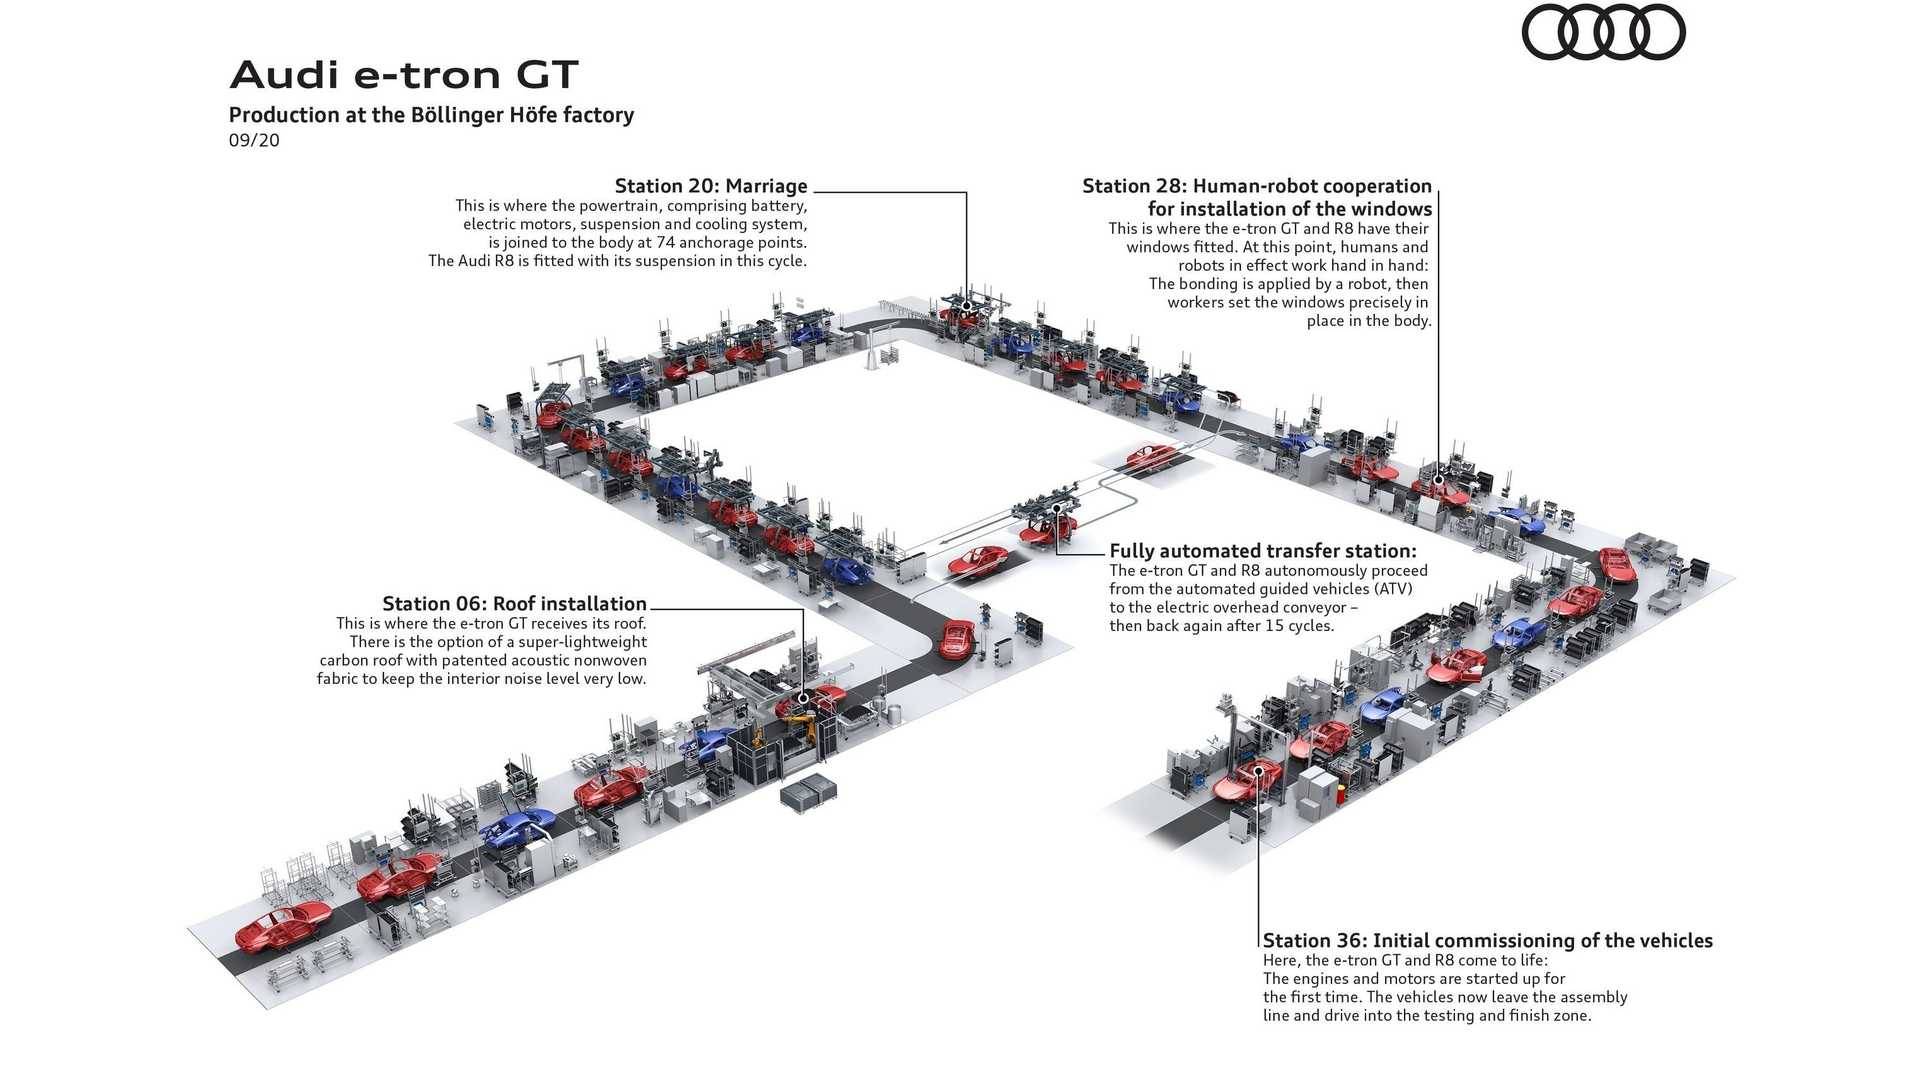 folyamatábra az Audi e-tron GT gyártásáról